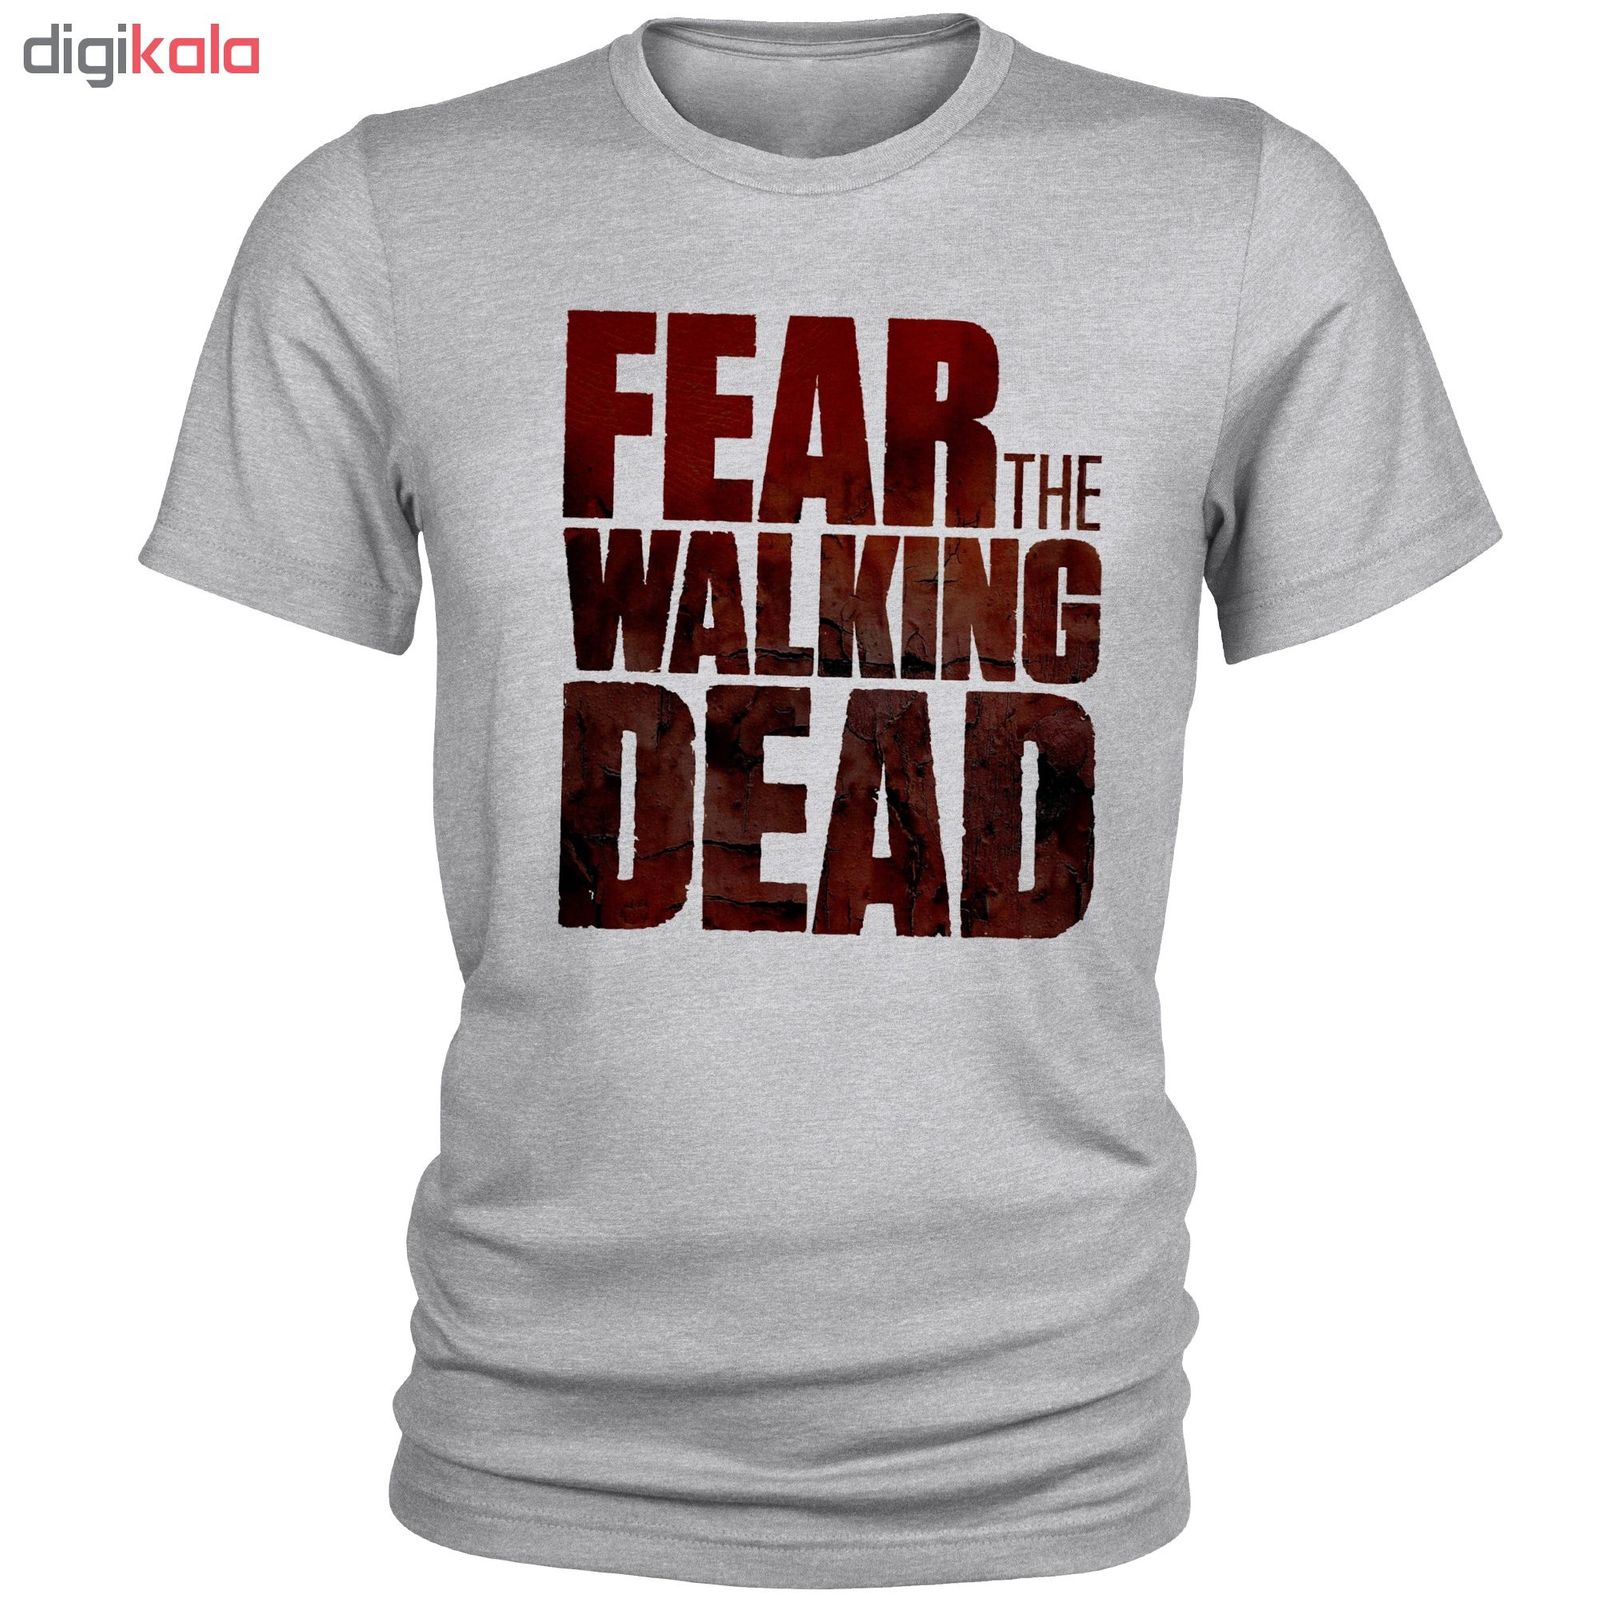 تی شرت مردانه مدل Walking dead کد A110